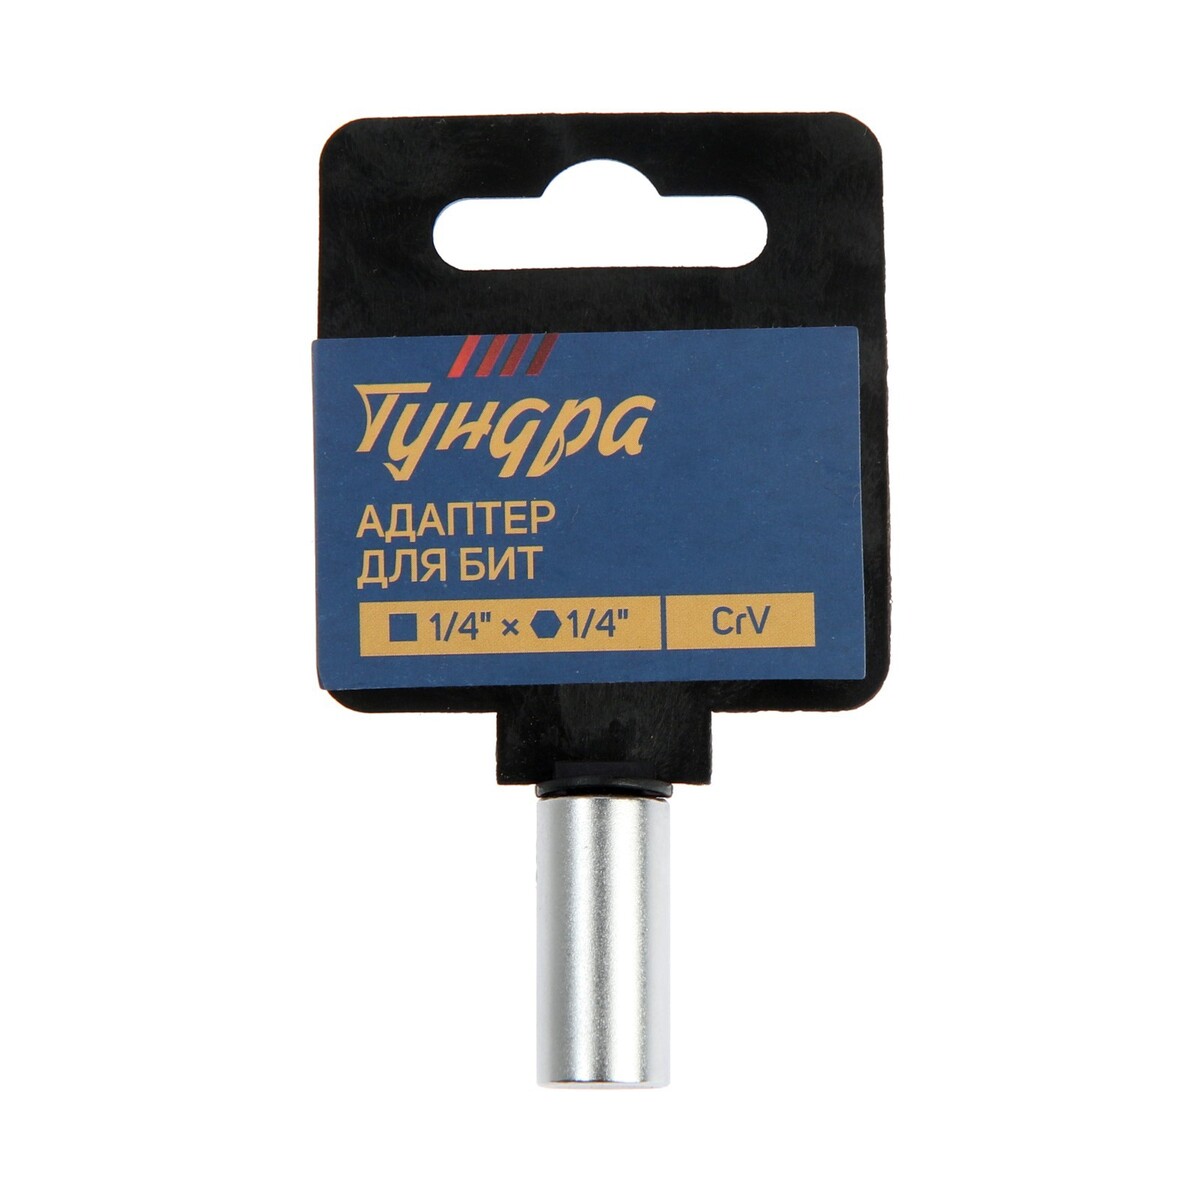 Адаптер для бит тундра, с квадрата 1/4 адаптер для бит тундра угловой до 20° поворотный 140 мм